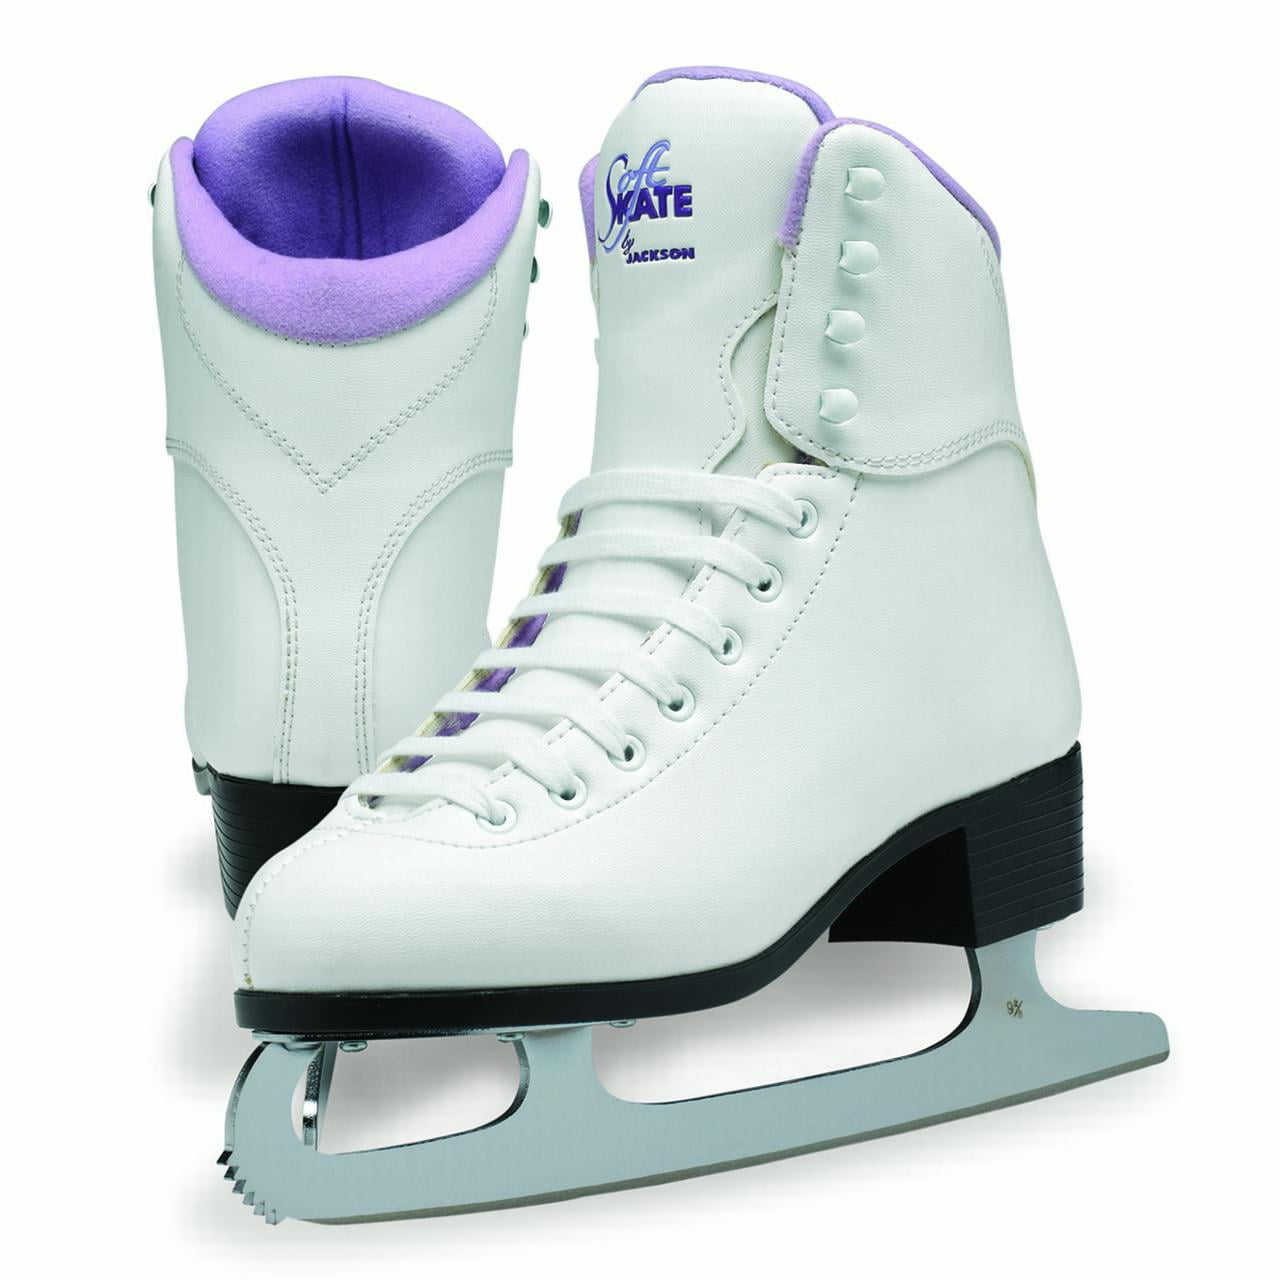 Jackson 180 JS180 SoftSkate Women's White Fleece Figure Ice Skates New 